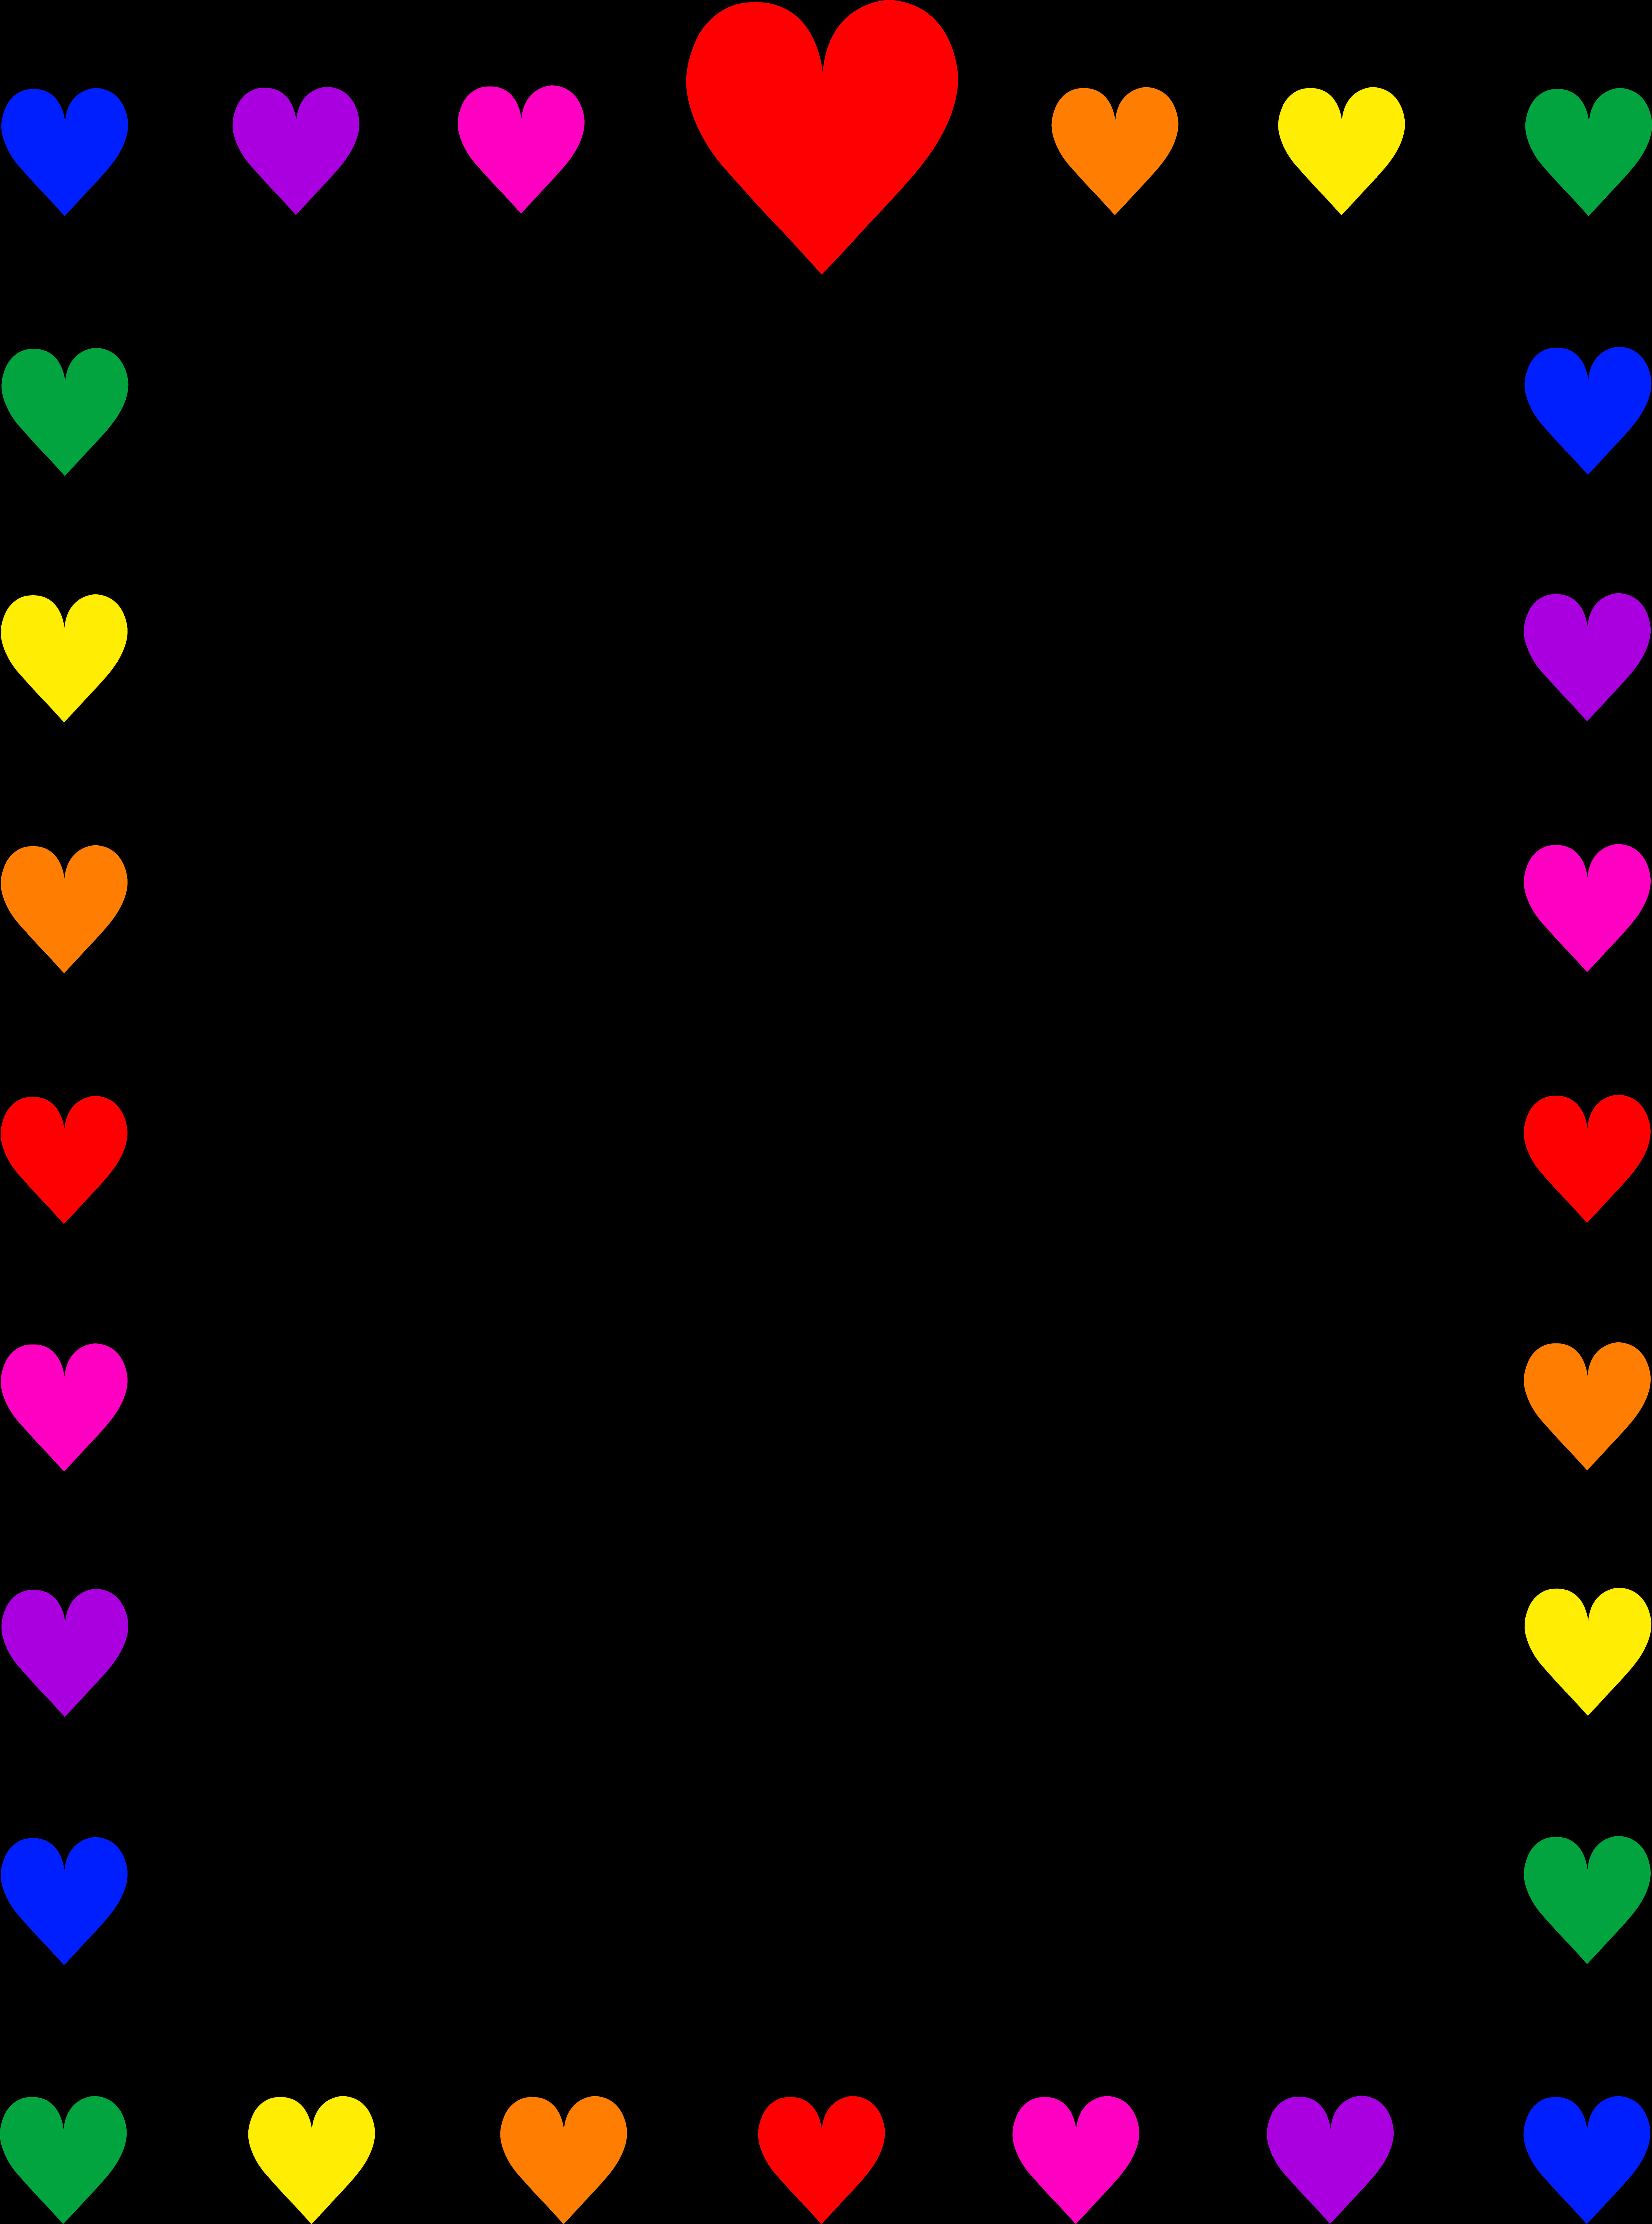 Colorful Hearts Border Design